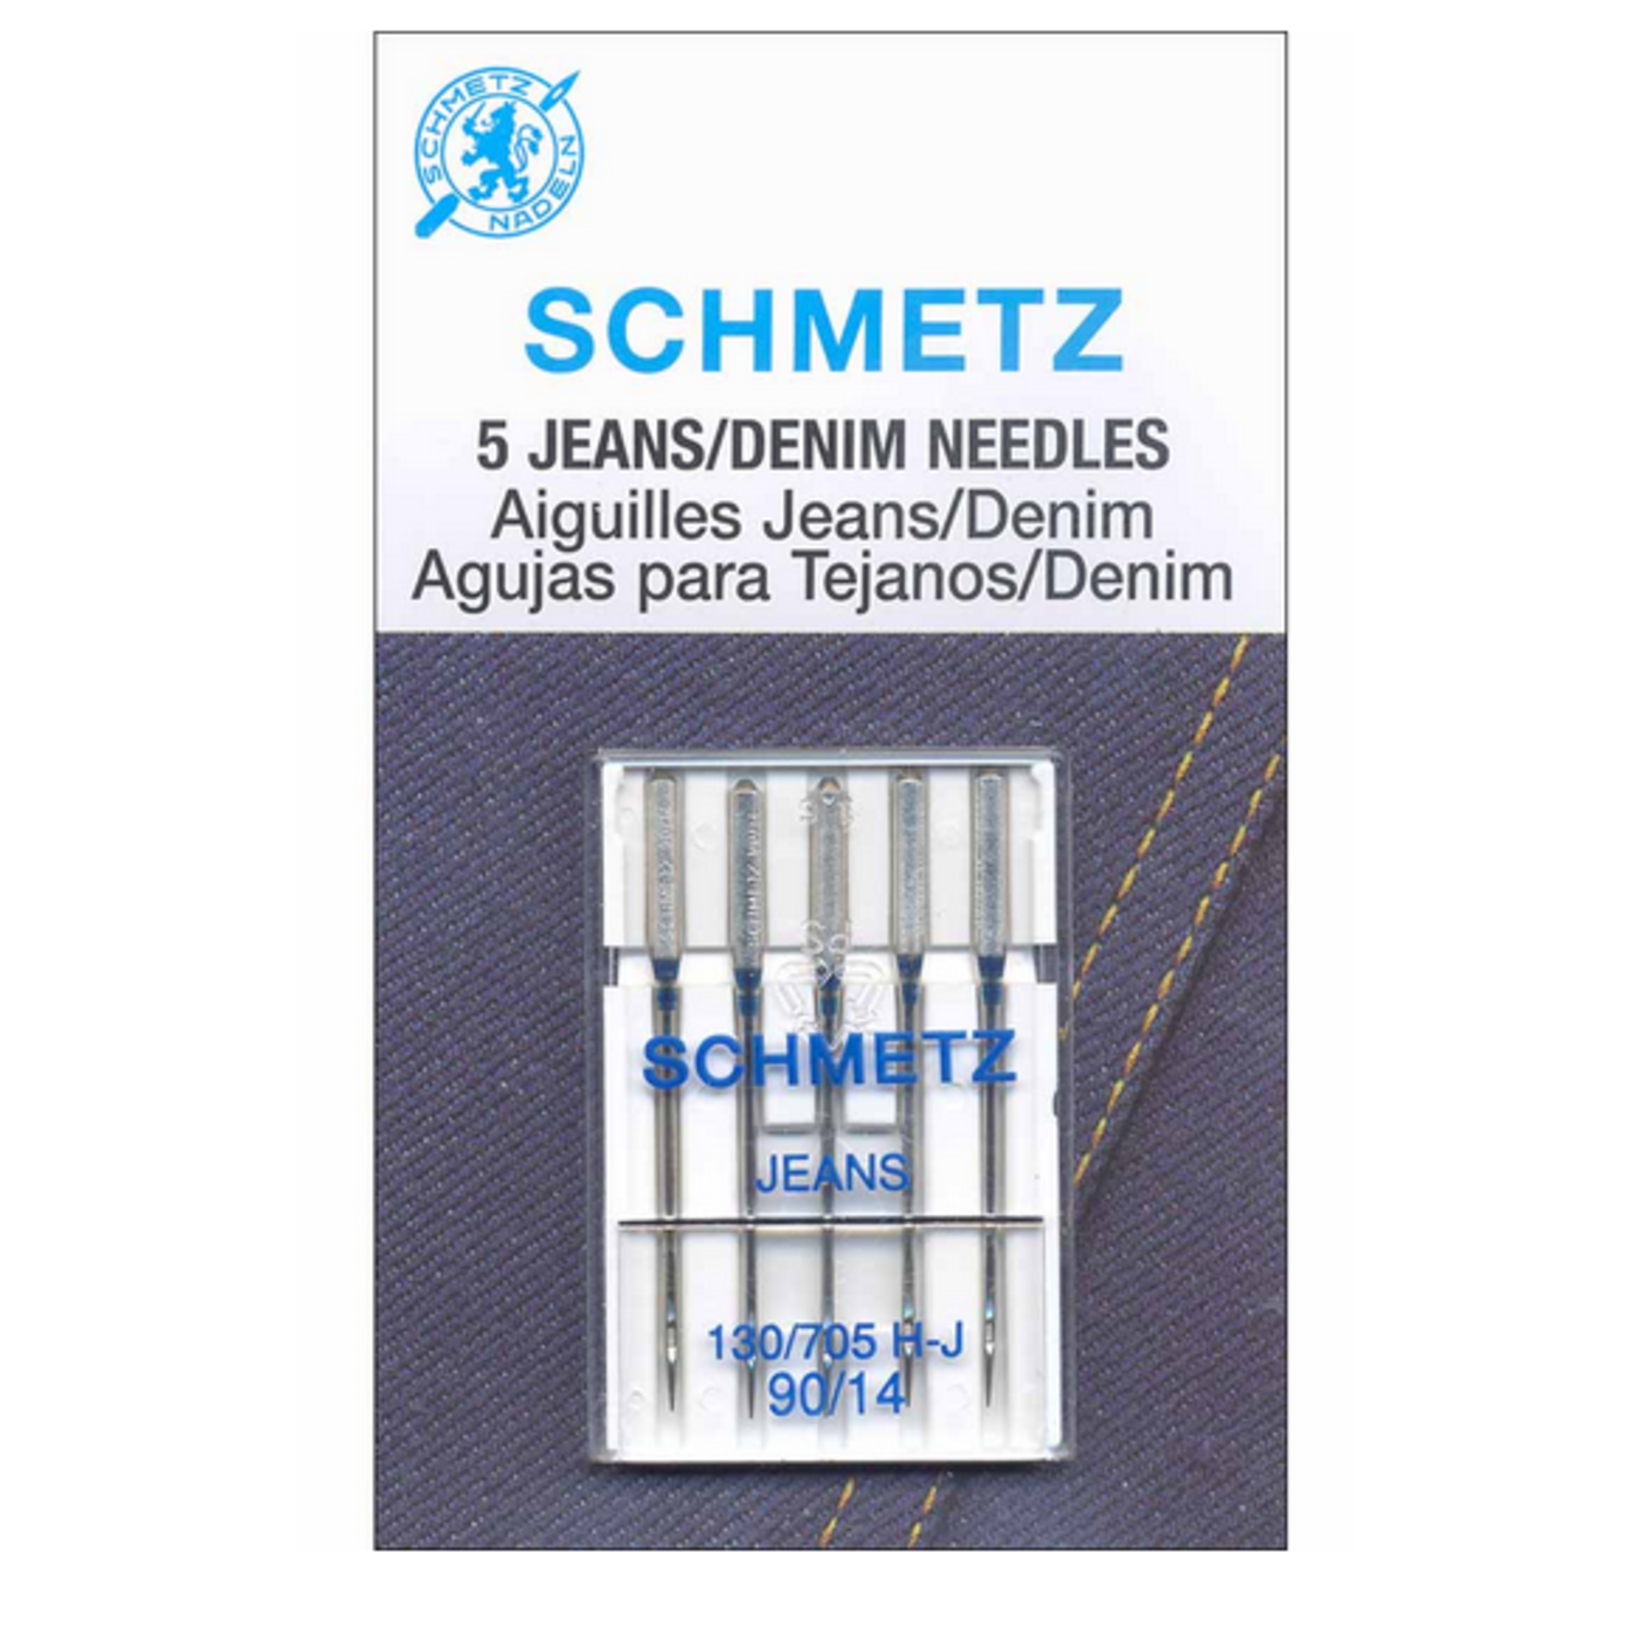 Schmetz Denim Machine Needles 130-705 H-J | 90/14 | S-1782